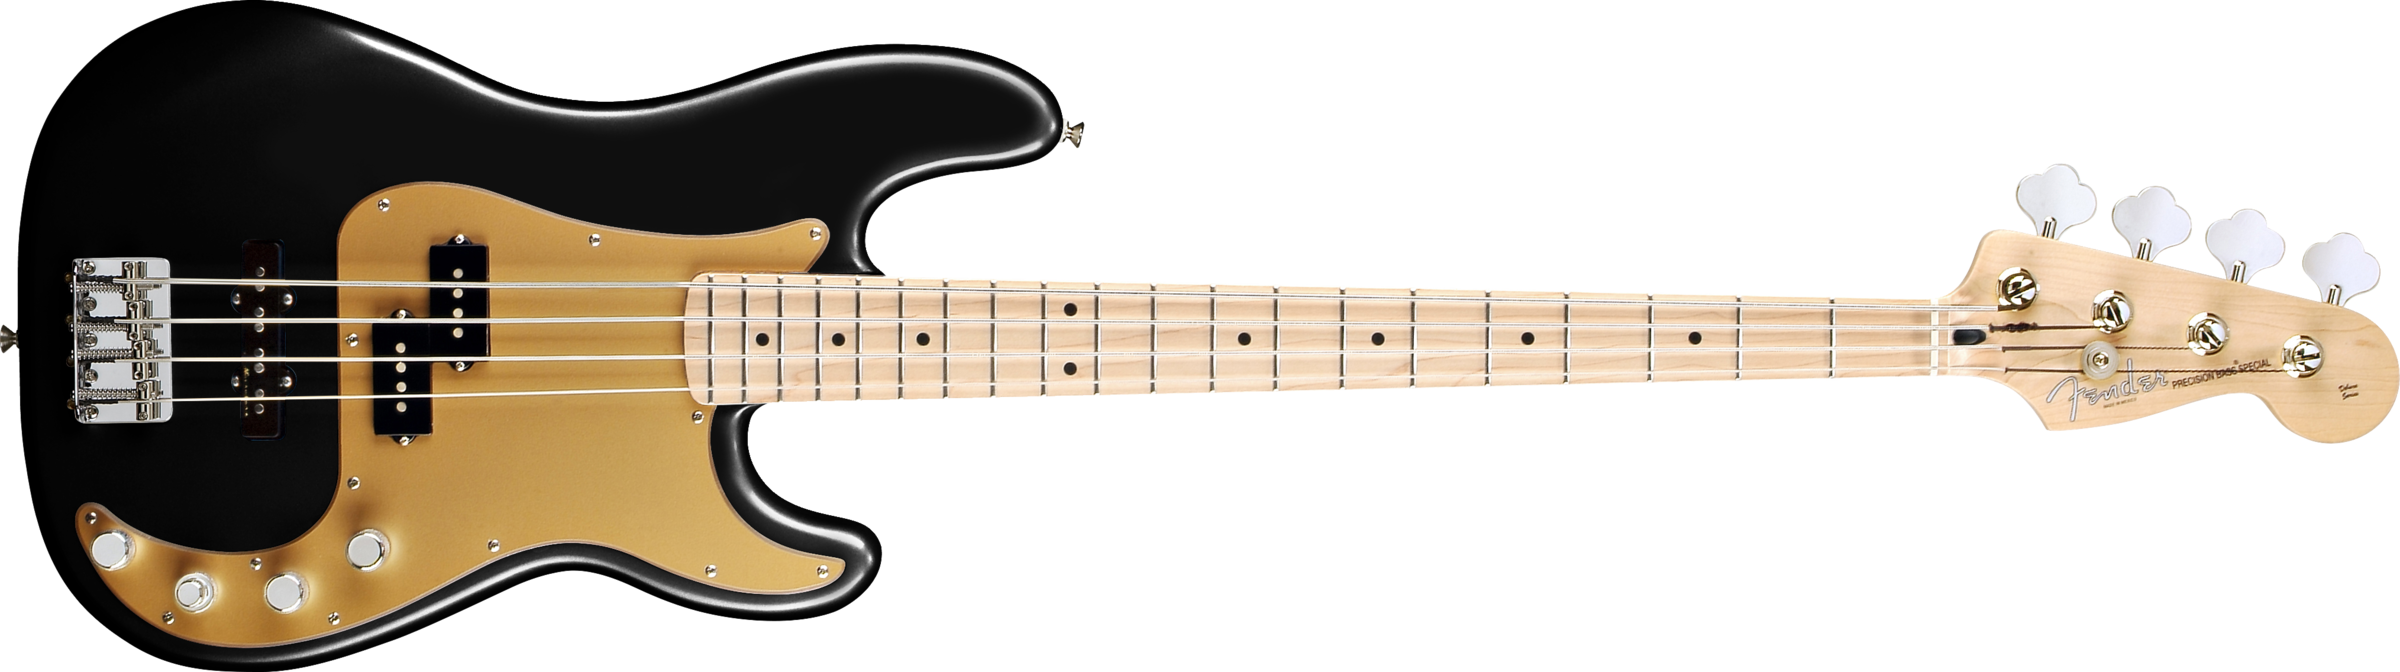 Bass Guitar Transparent PNG Image